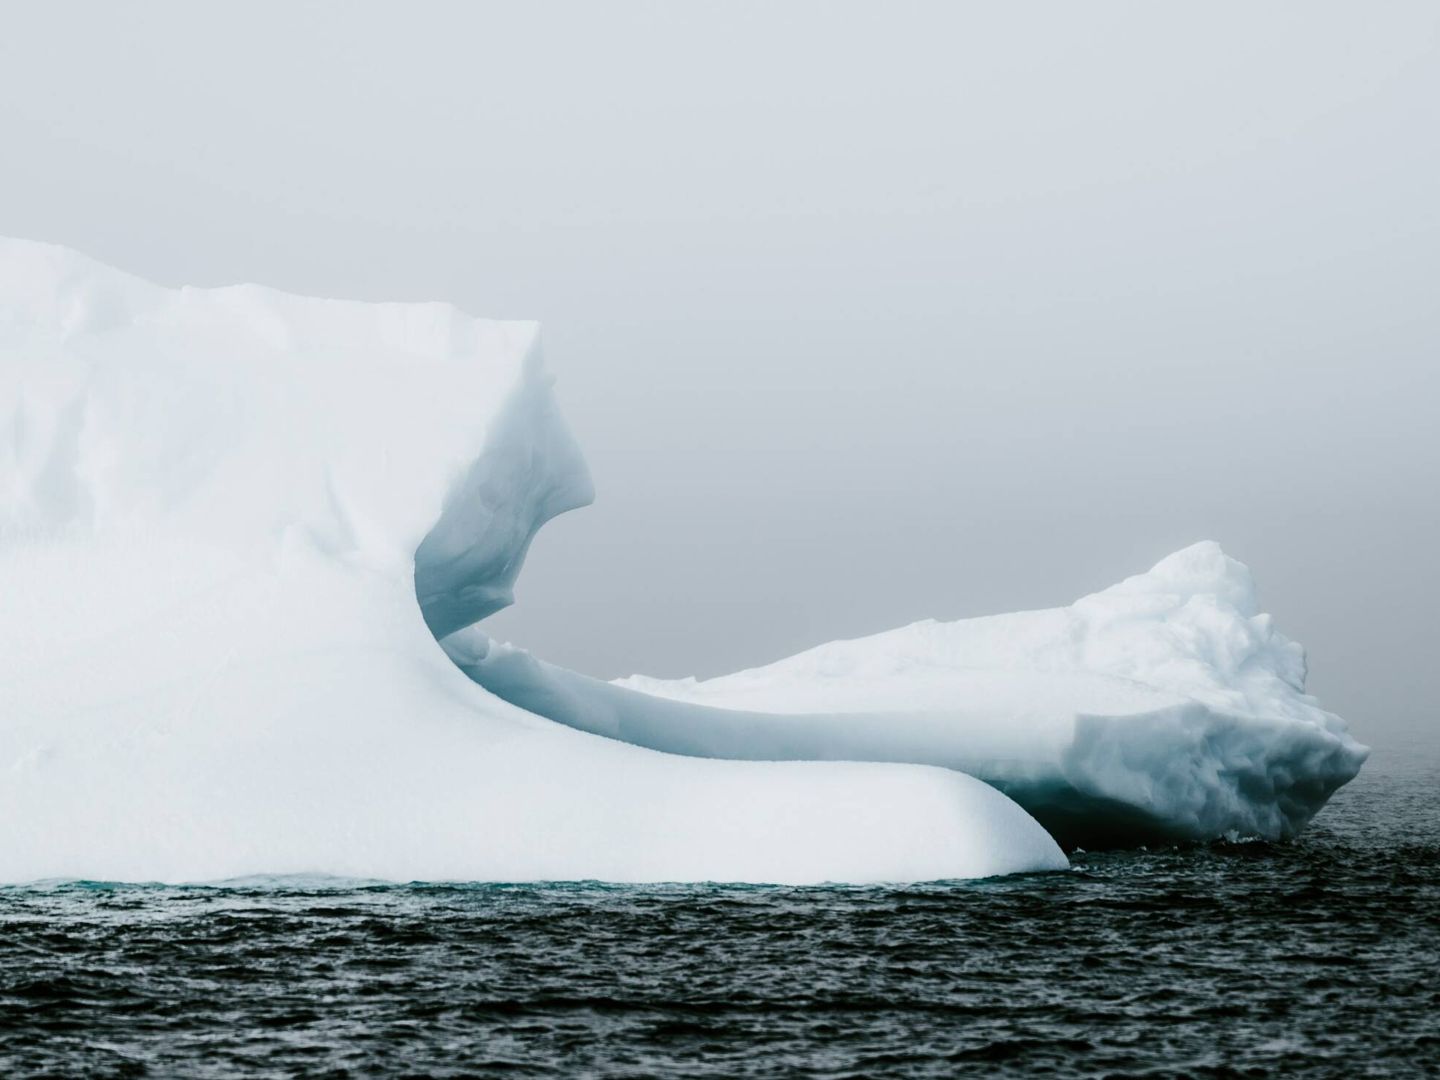 La pérdida de grandes extensiones de hielo marino reduce el hábitat de determinadas especies como morsas, osos polares o focas. Unsplash